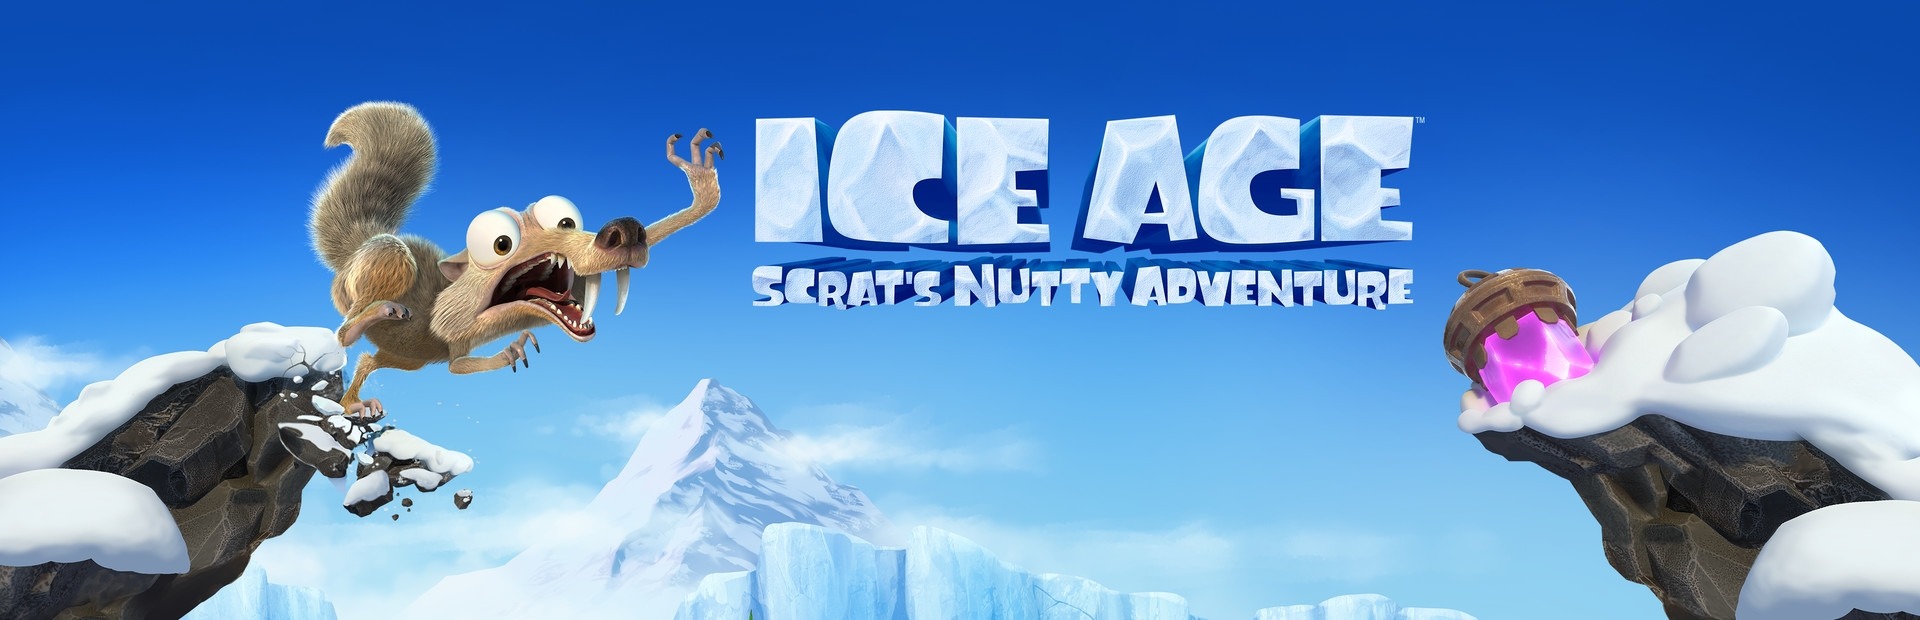 L’Era Glaciale: La strampalata avventura di Scrat (Xbox ONE / Xbox Series X|S)